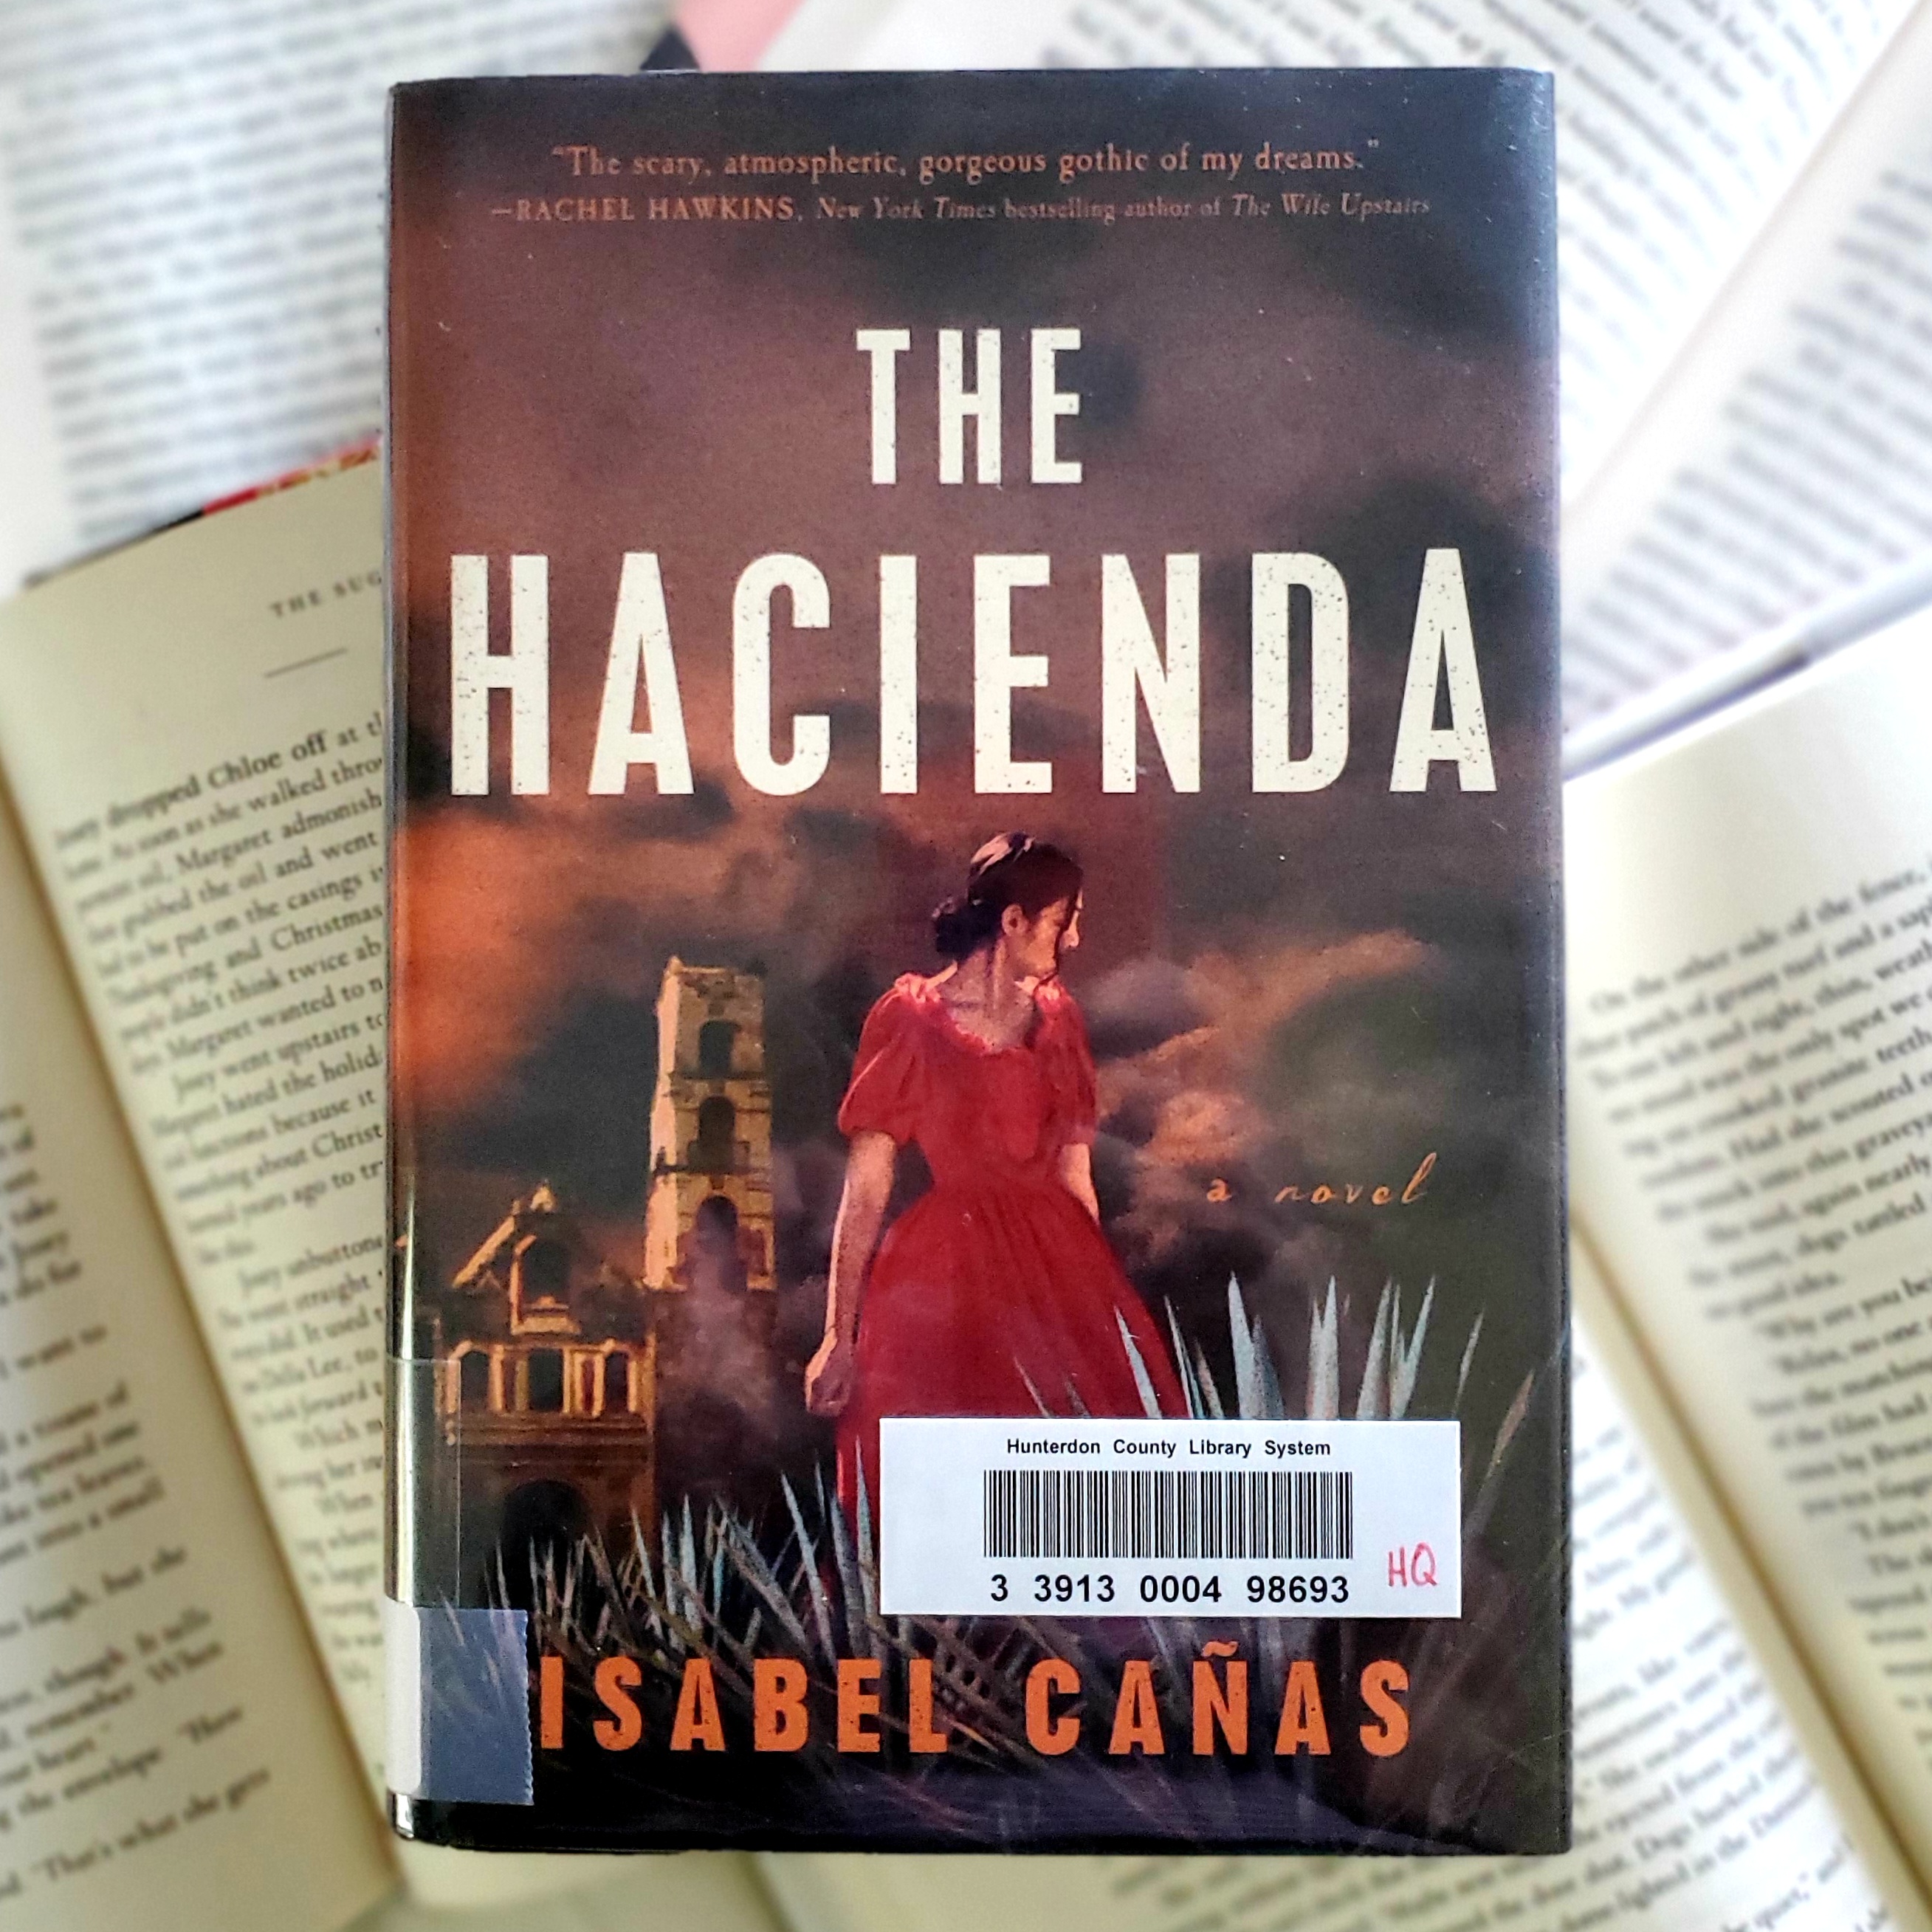 The Hacienda book cover